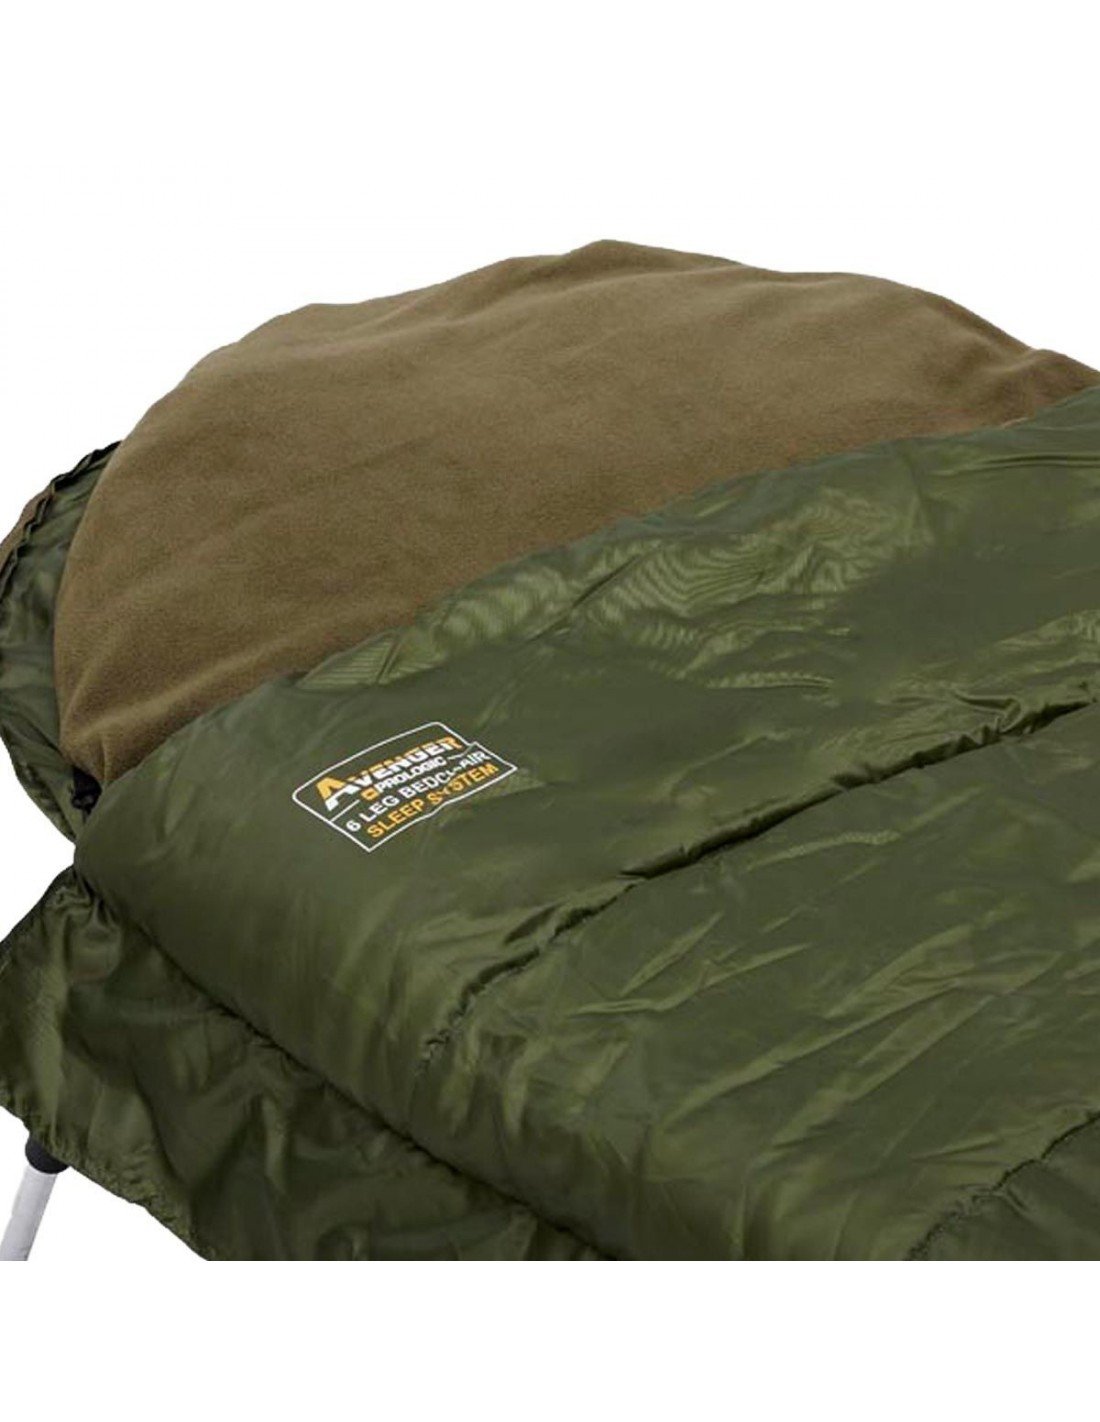 Prologic Avenger Sleeping Bag & Bedchair System 6 Leg легло - система за сън